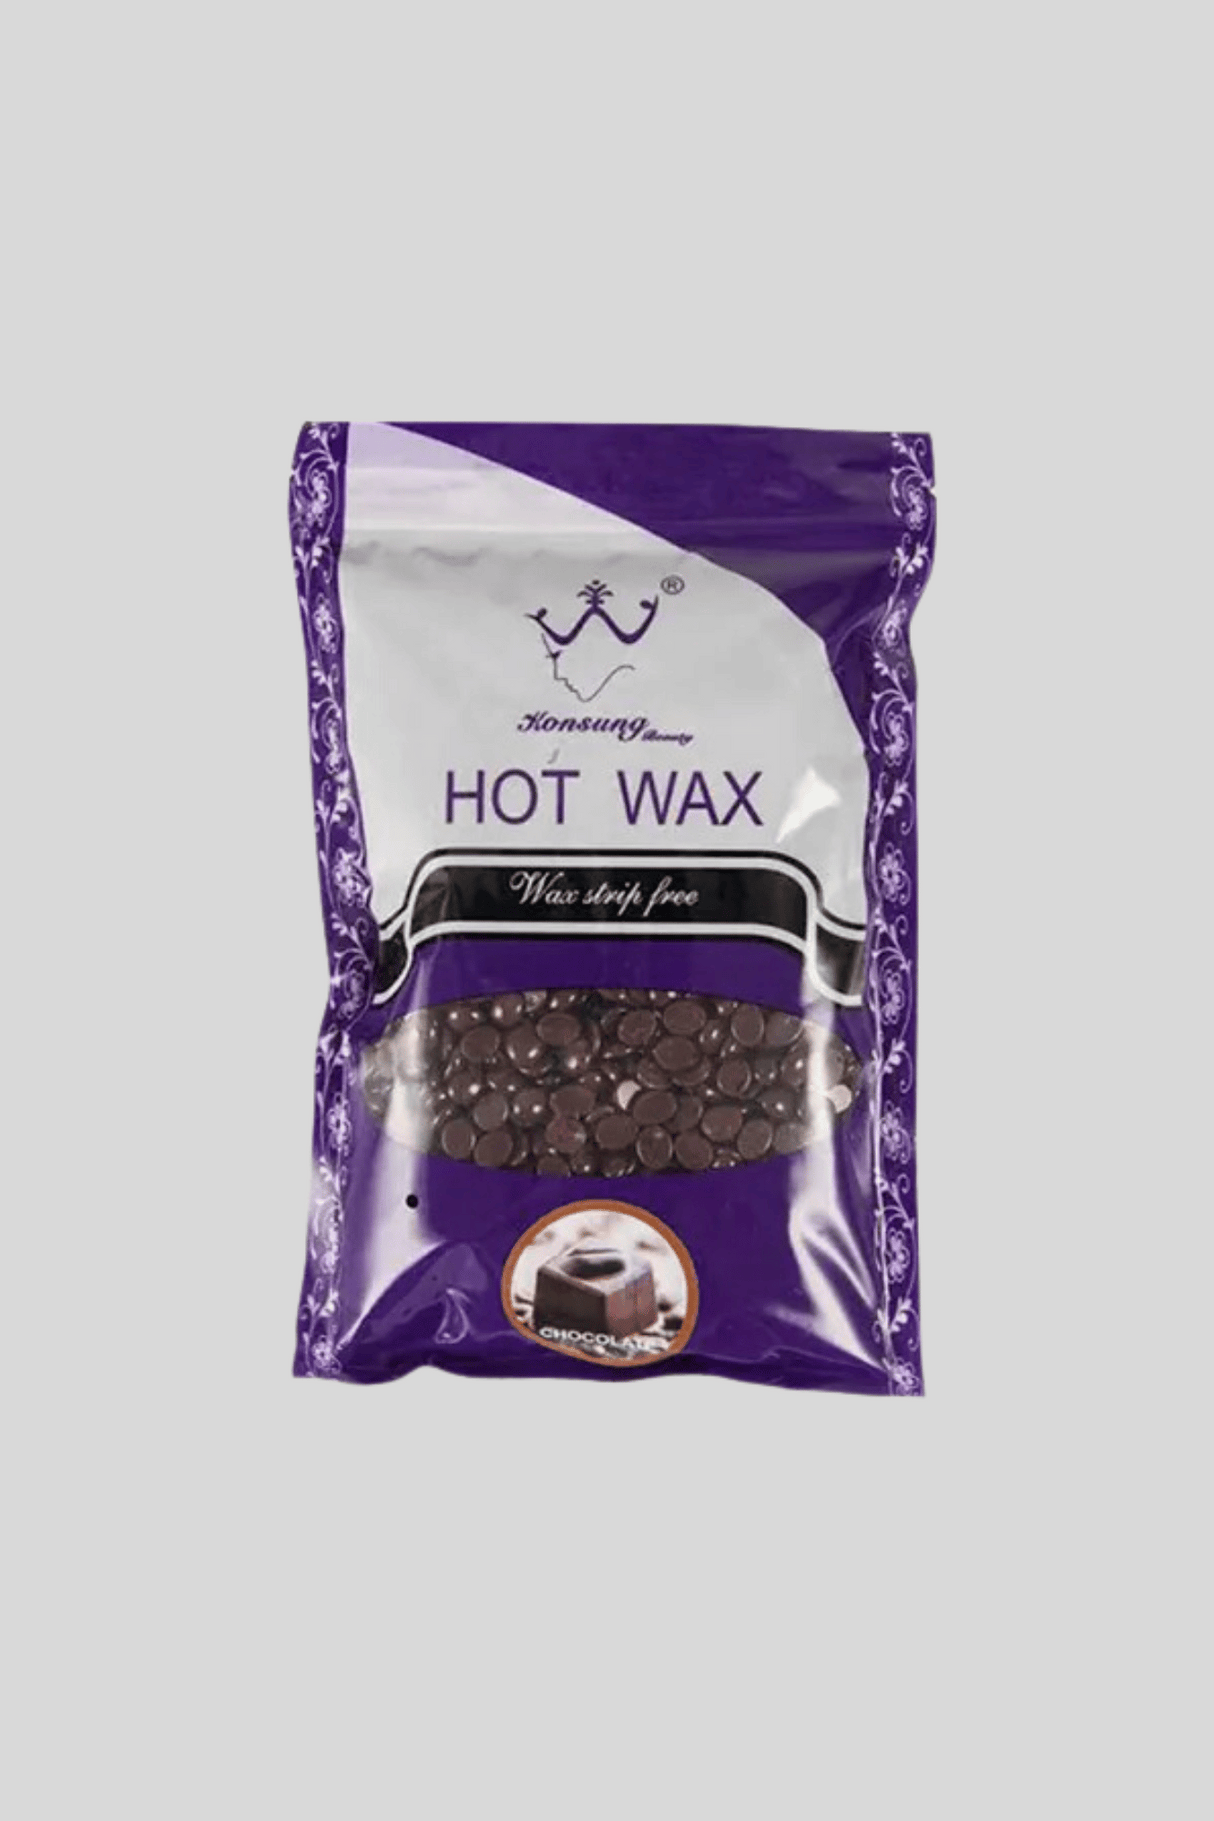 konsung hot wax beans 100g